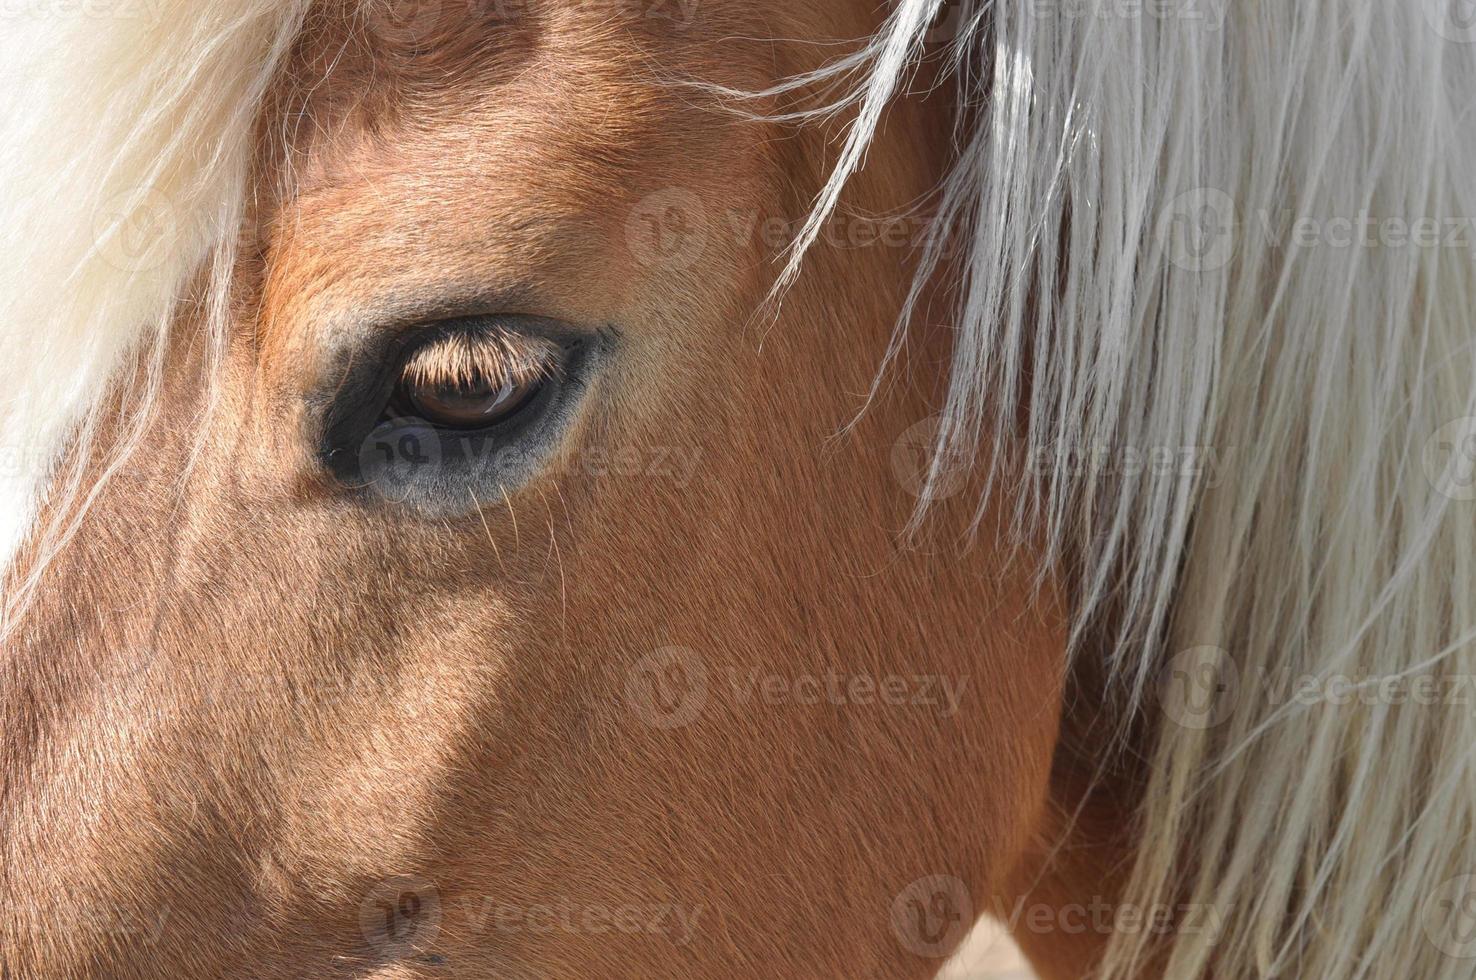 paard, caballus, ondersoort van wilde equus ferus foto